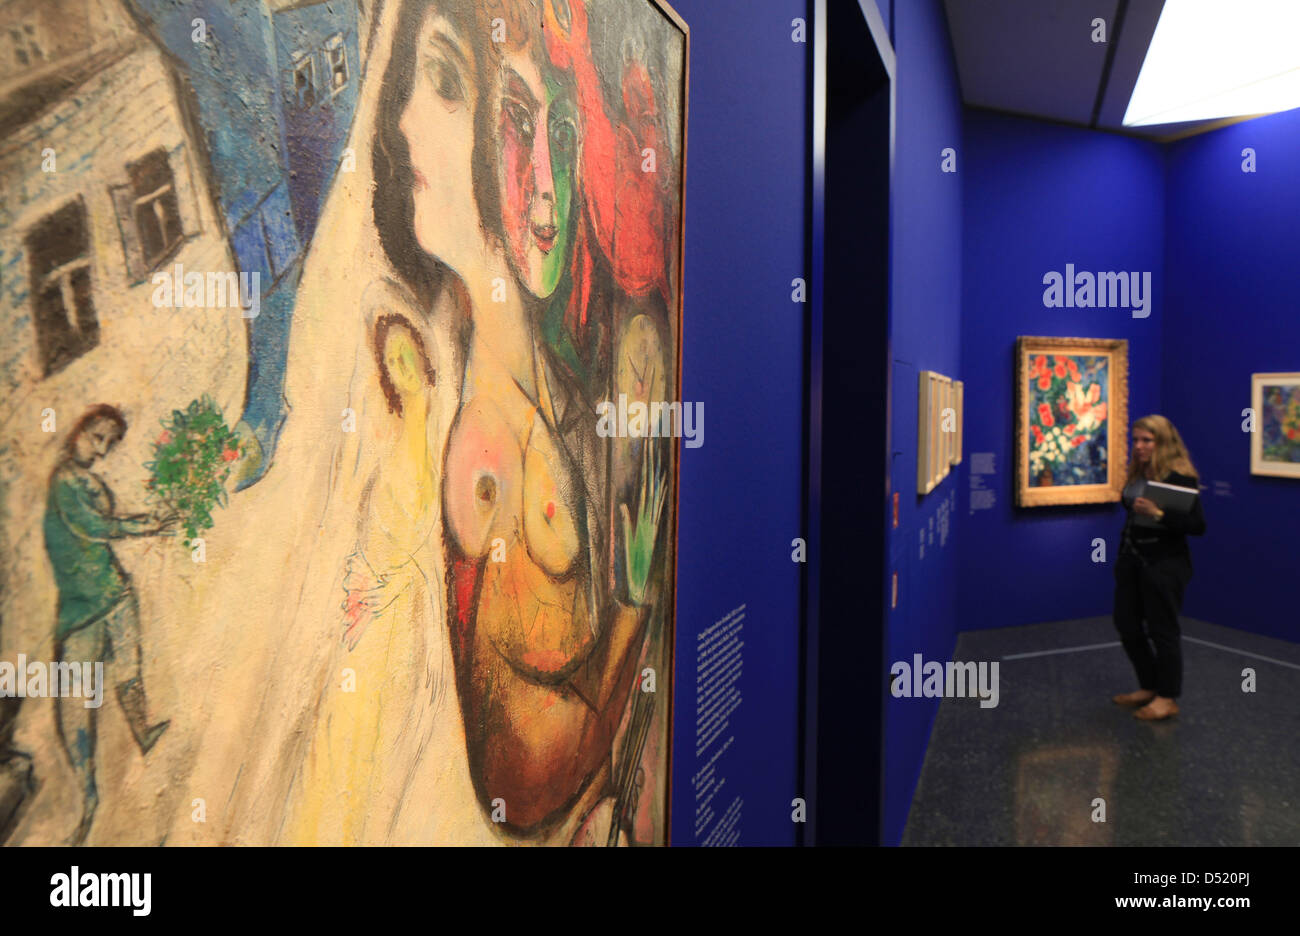 Les yeux d'une femme le travail "Le gant noir', par Marc Chagall à Bucerius  Forum de l'Art à Hambourg, Allemagne, 07 octobre 2010. Quelque 150  peintures, dessins et gravures de Chagall sont